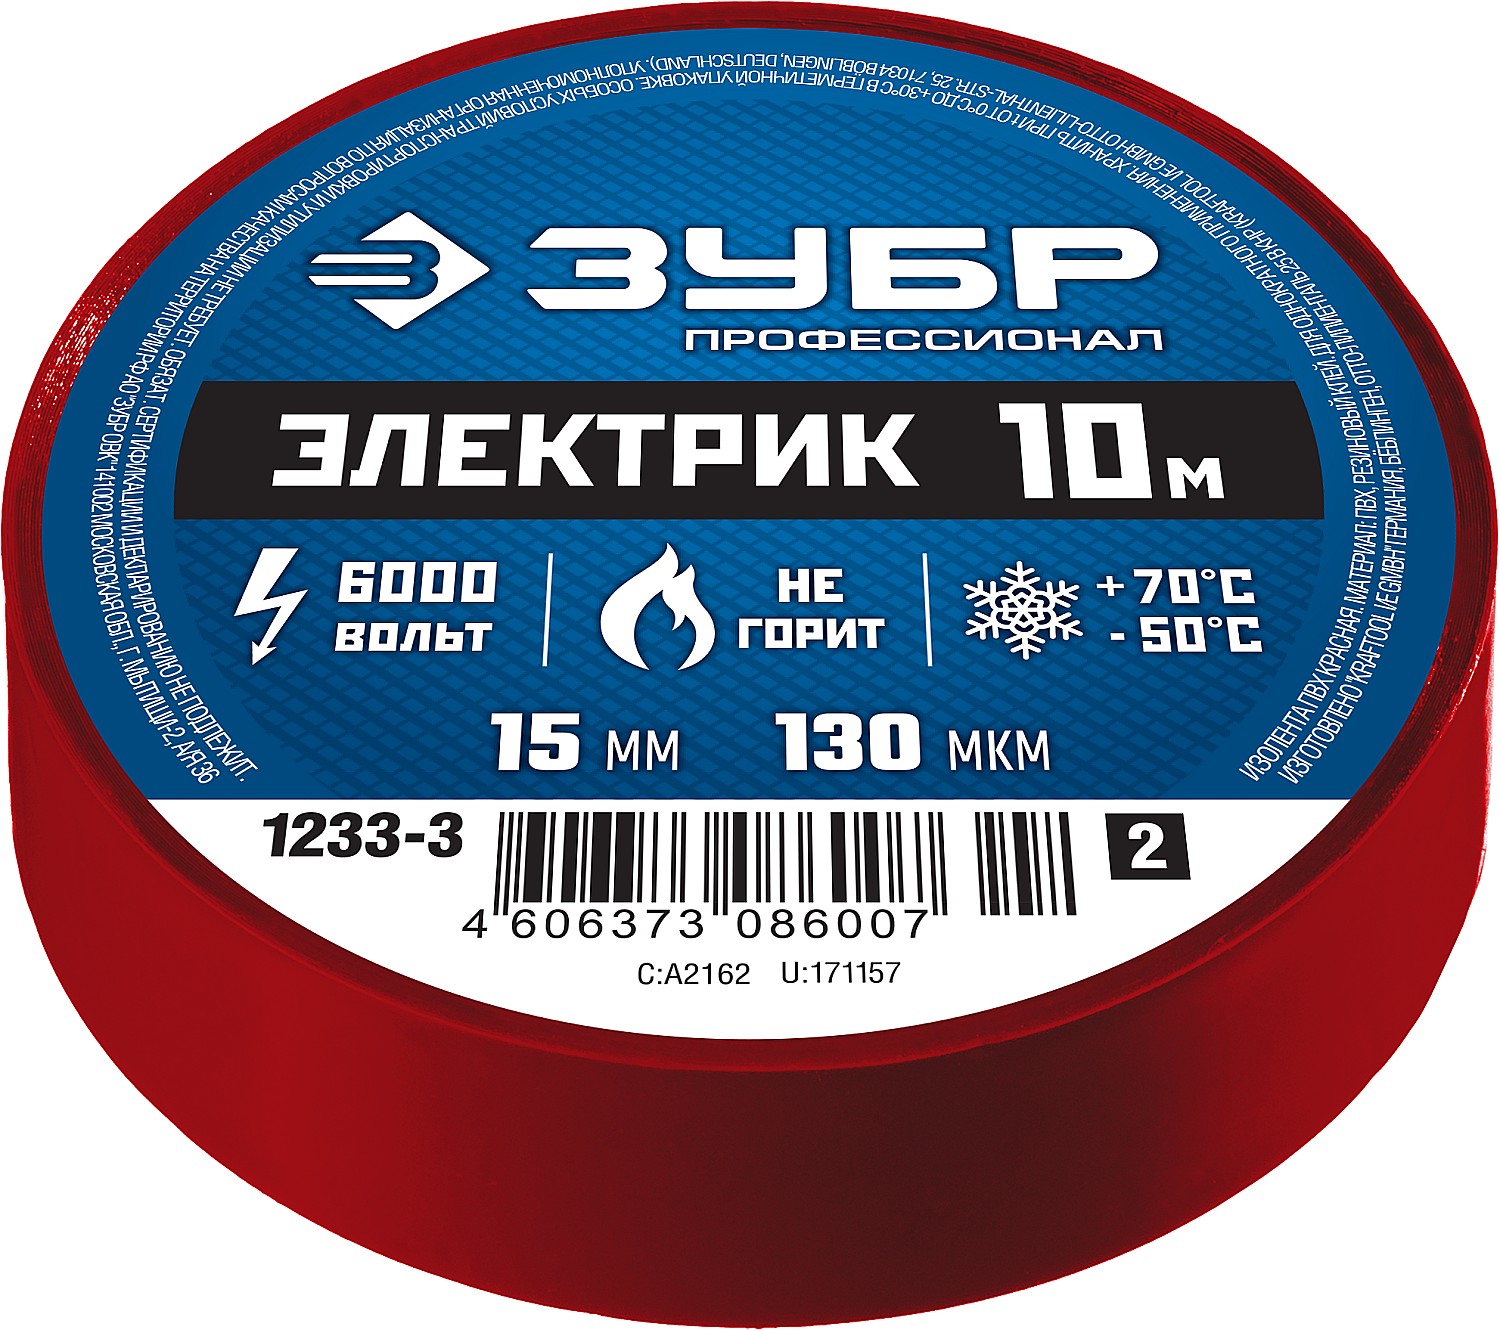 ЗУБР ЭЛЕКТРИК-10, 15 мм х 10 м, 6 000 В, красная, не поддерживает горение, изолента ПВХ, Профессионал (1233-3)